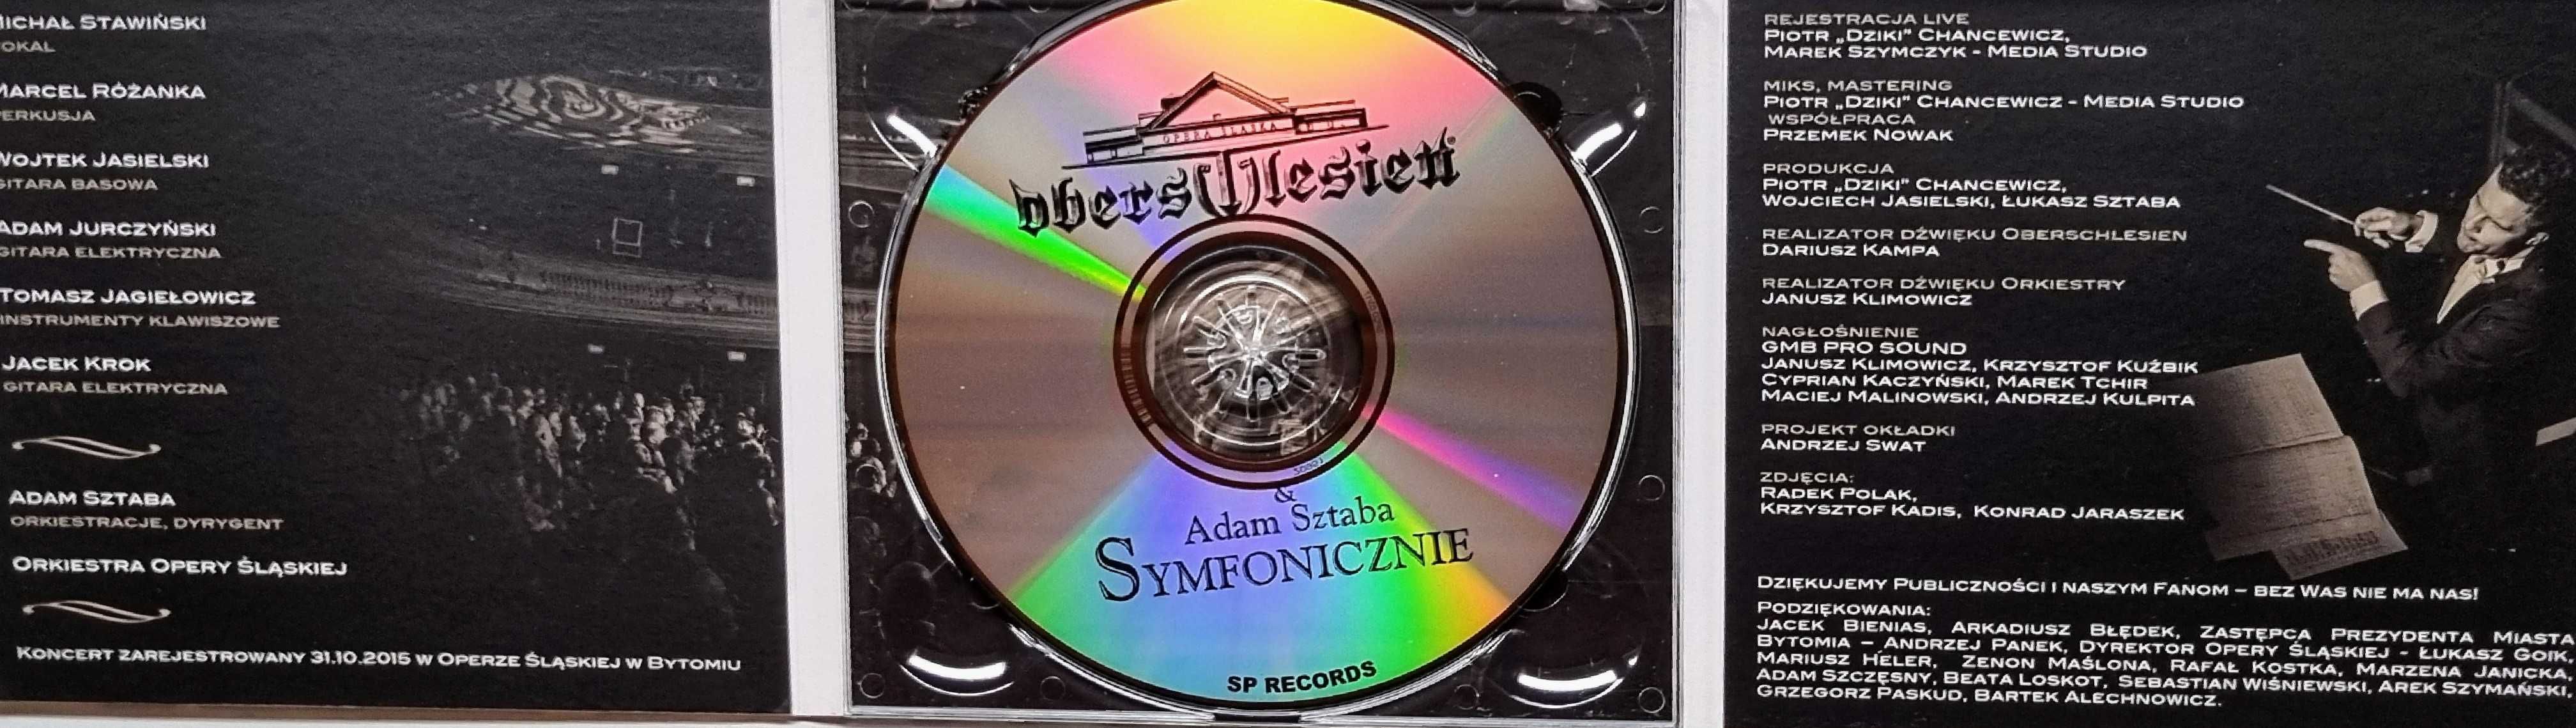 Oberschleisen "Symfonicznie" 1 DVD